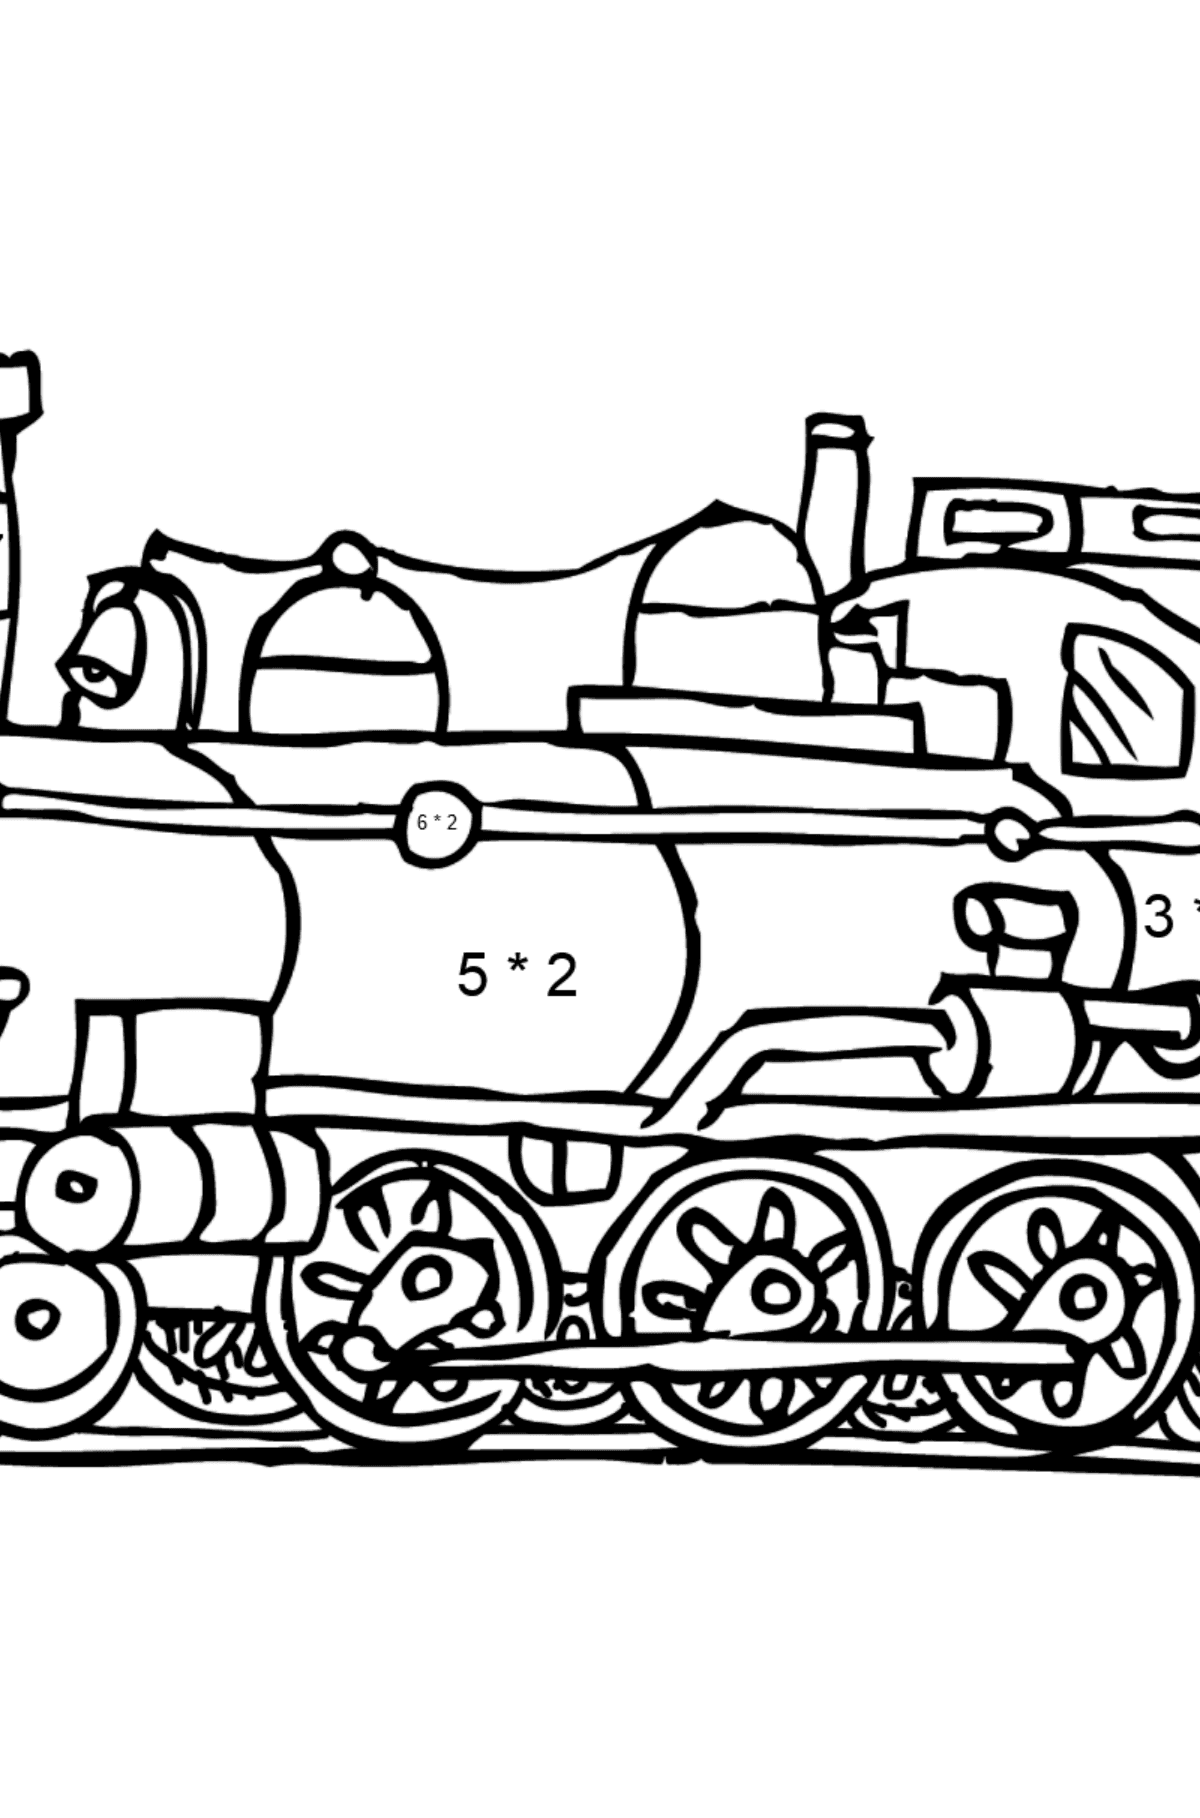 Desenho de Locomotiva para colorir - Colorindo com Matemática - Multiplicação para Crianças